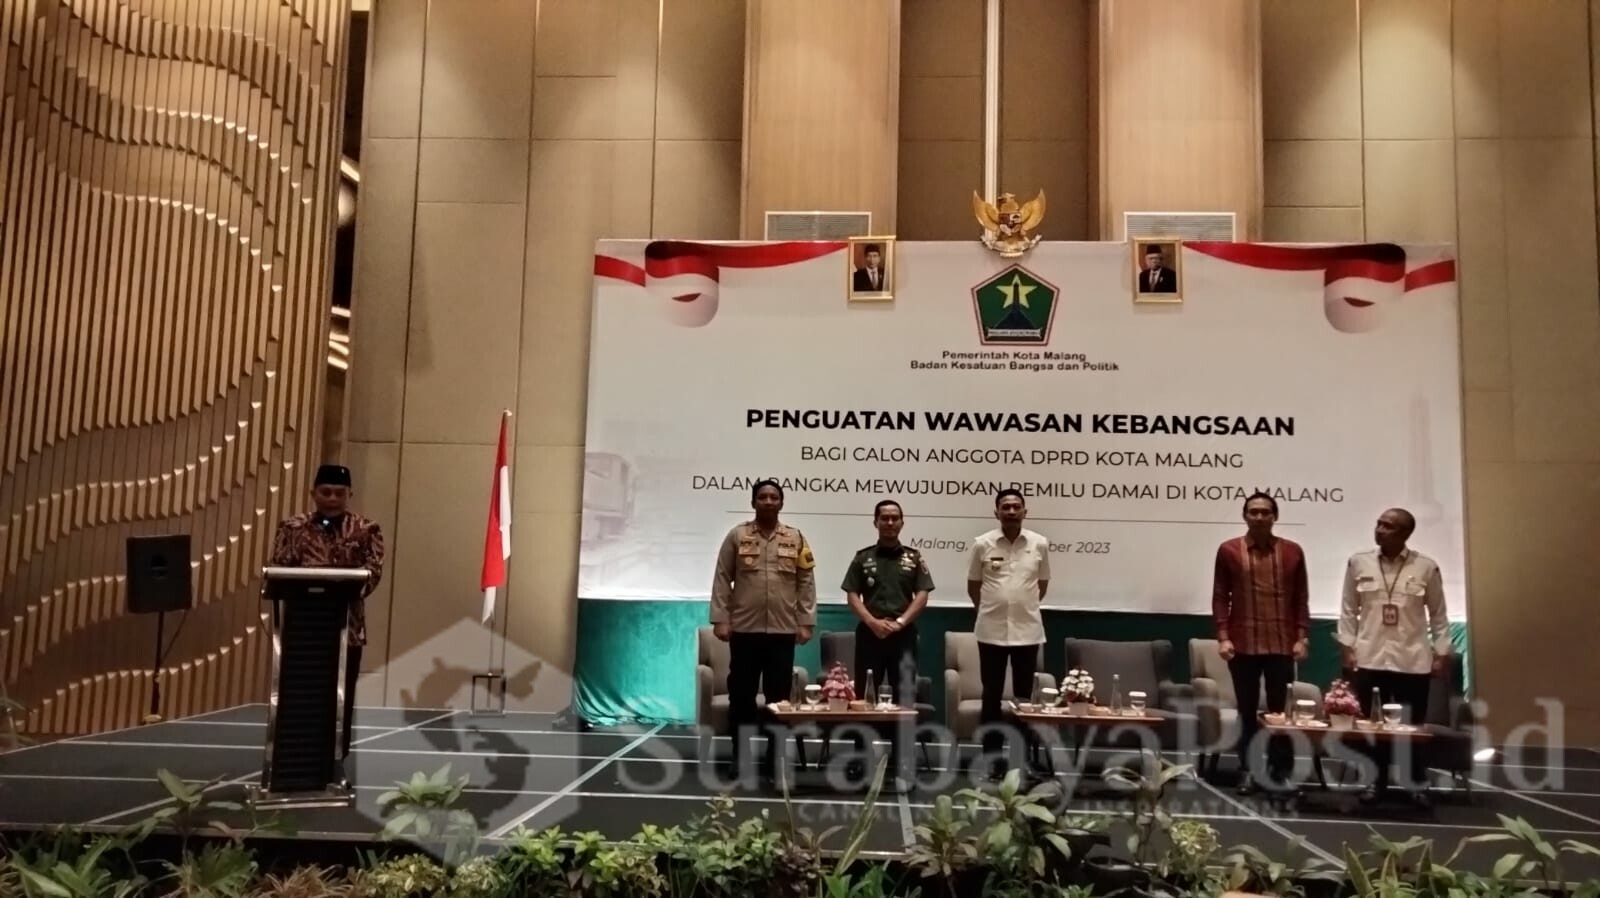 Ketua DPRD Kota Malang, I Made Riandiana Kartika memimpin pembacaan ikrar Pemilu Damai kepada seluruh calon legislatif dalam rangkaian kegiatan Penguatan Wawasan Kebangsaan, Rabu (08/11/2023)